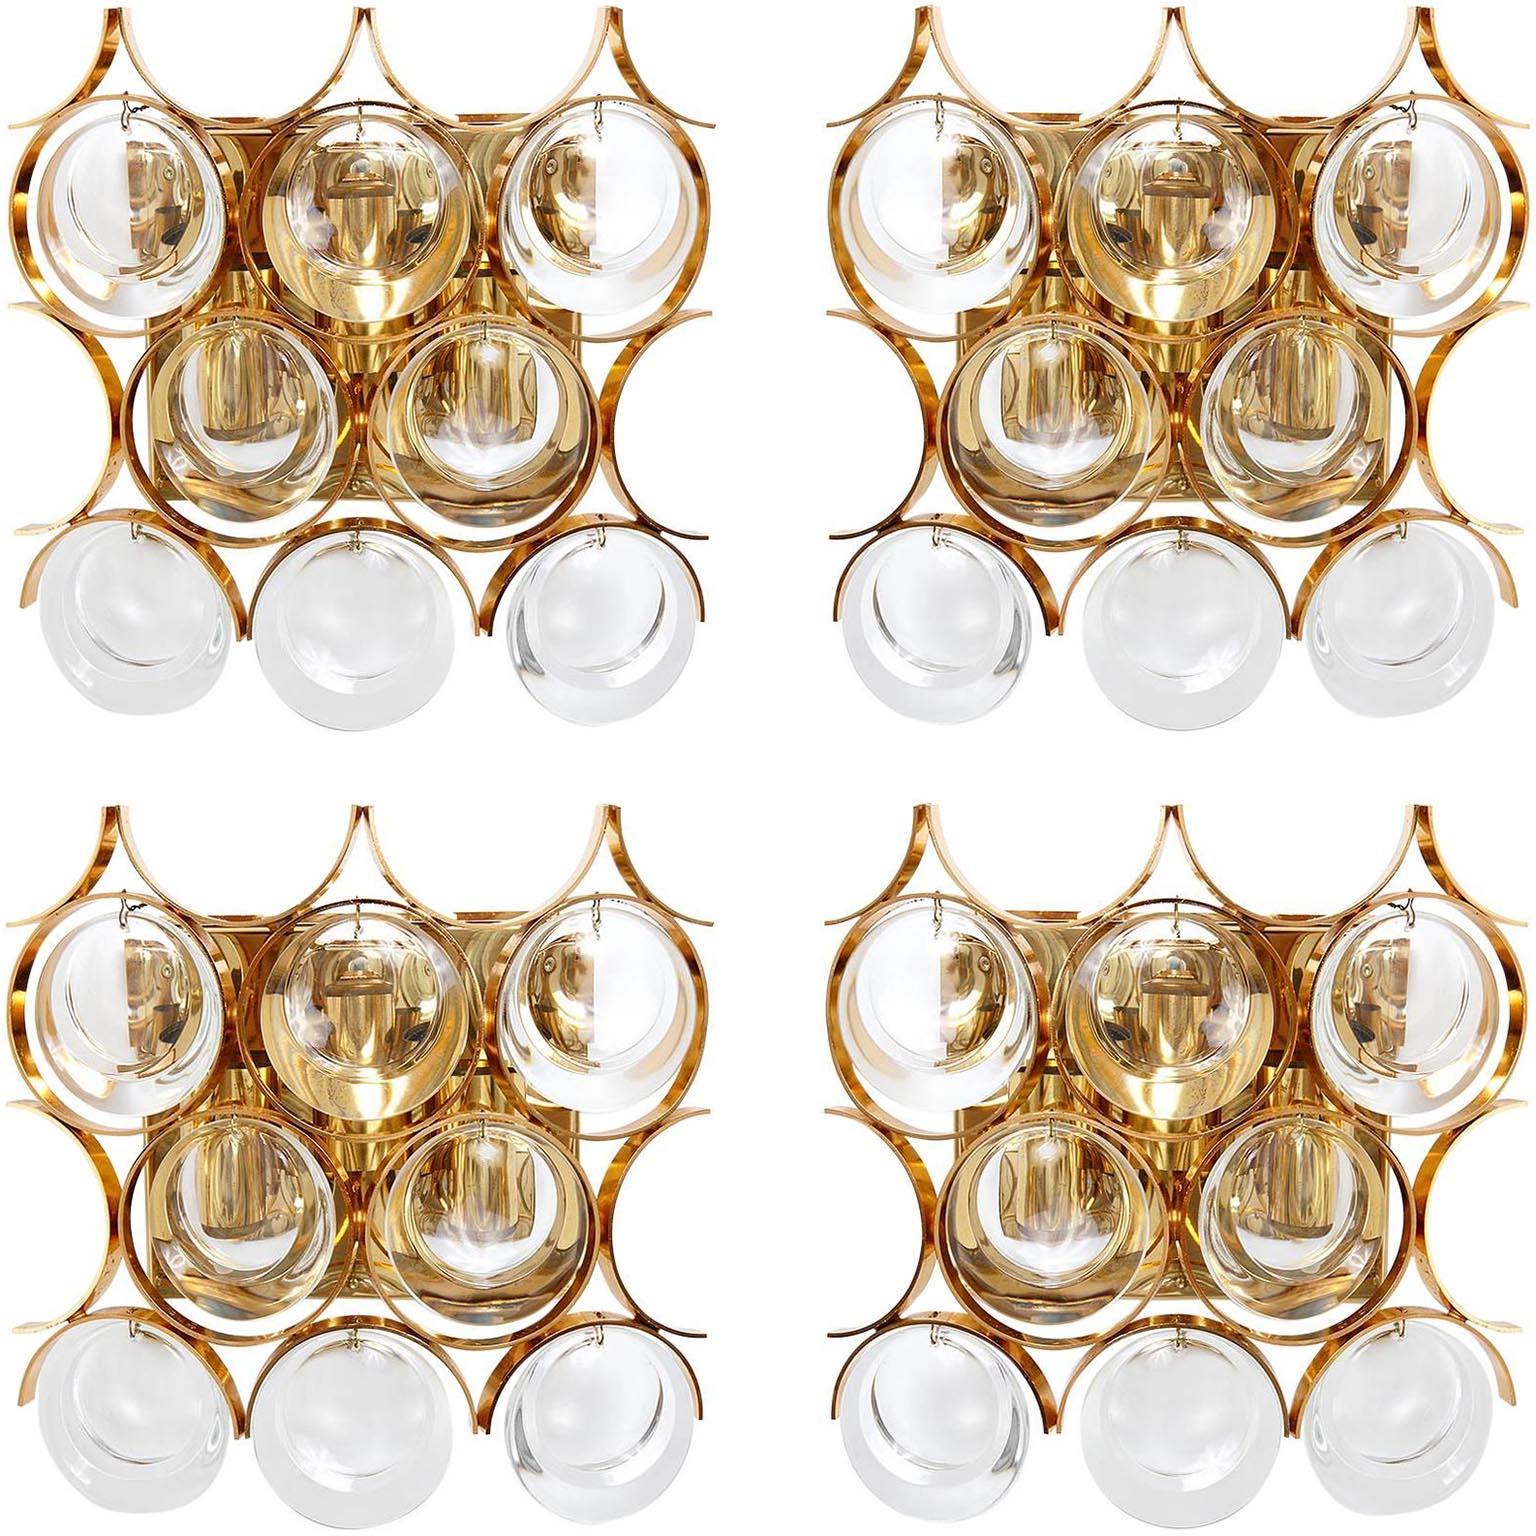 Ein Paar schöne Wandleuchten von Palwa (Palme und Walter), Deutschland, hergestellt in der Mitte des Jahrhunderts, um 1970 (1960er-1970er). Sie sind aus vergoldetem/vergoldetem Messing und haben große runde Gläser. Jede Leuchte ist für drei kleine